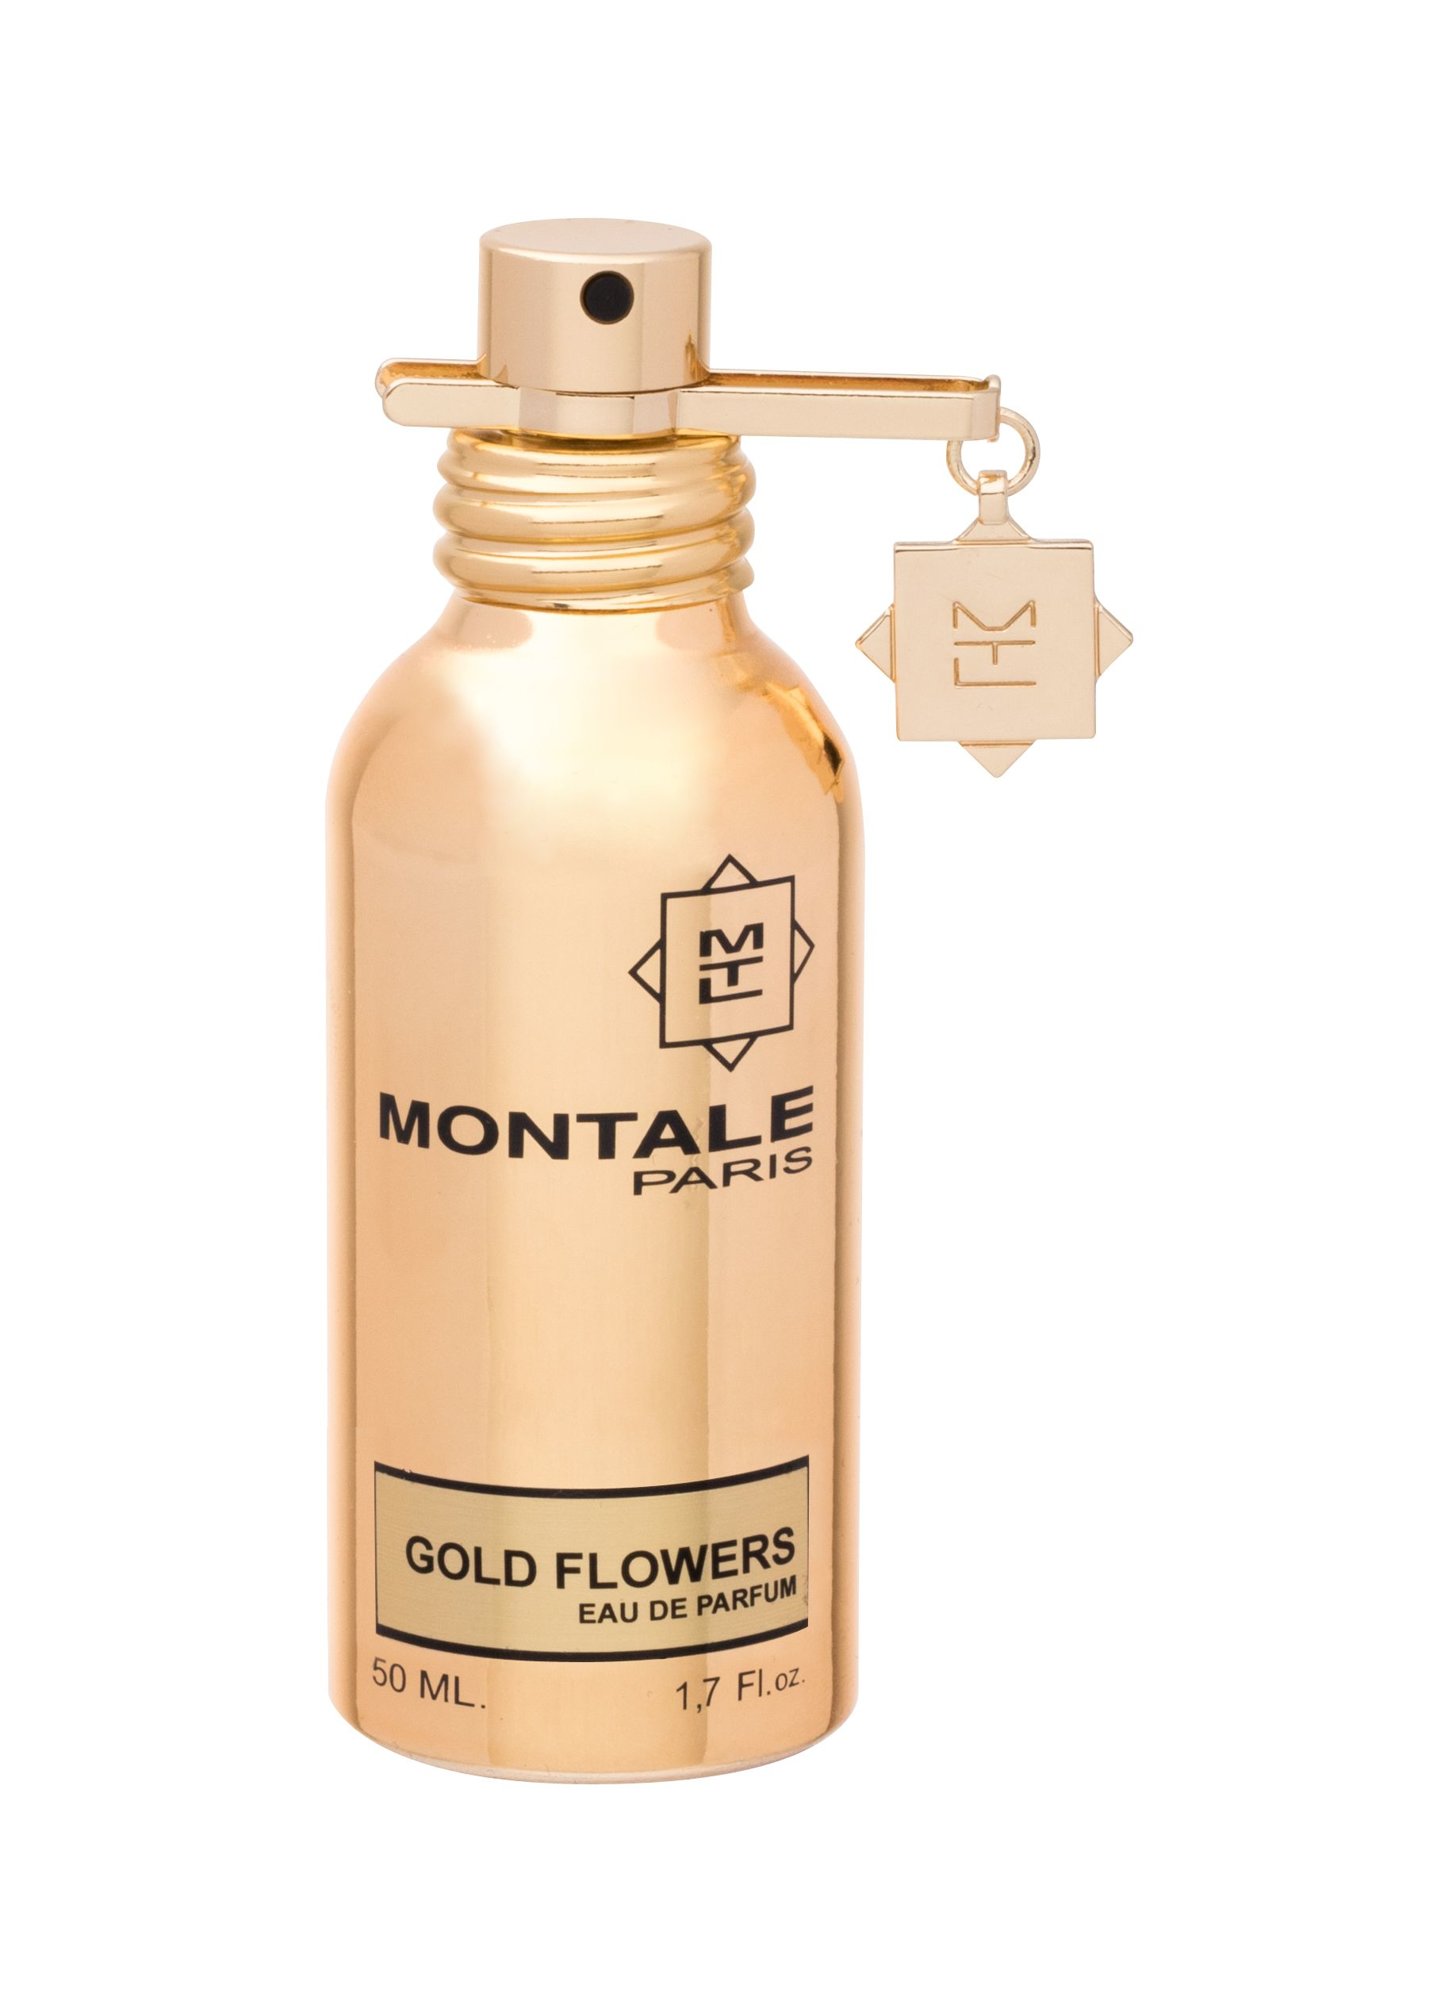 Montale Paris Gold Flowers